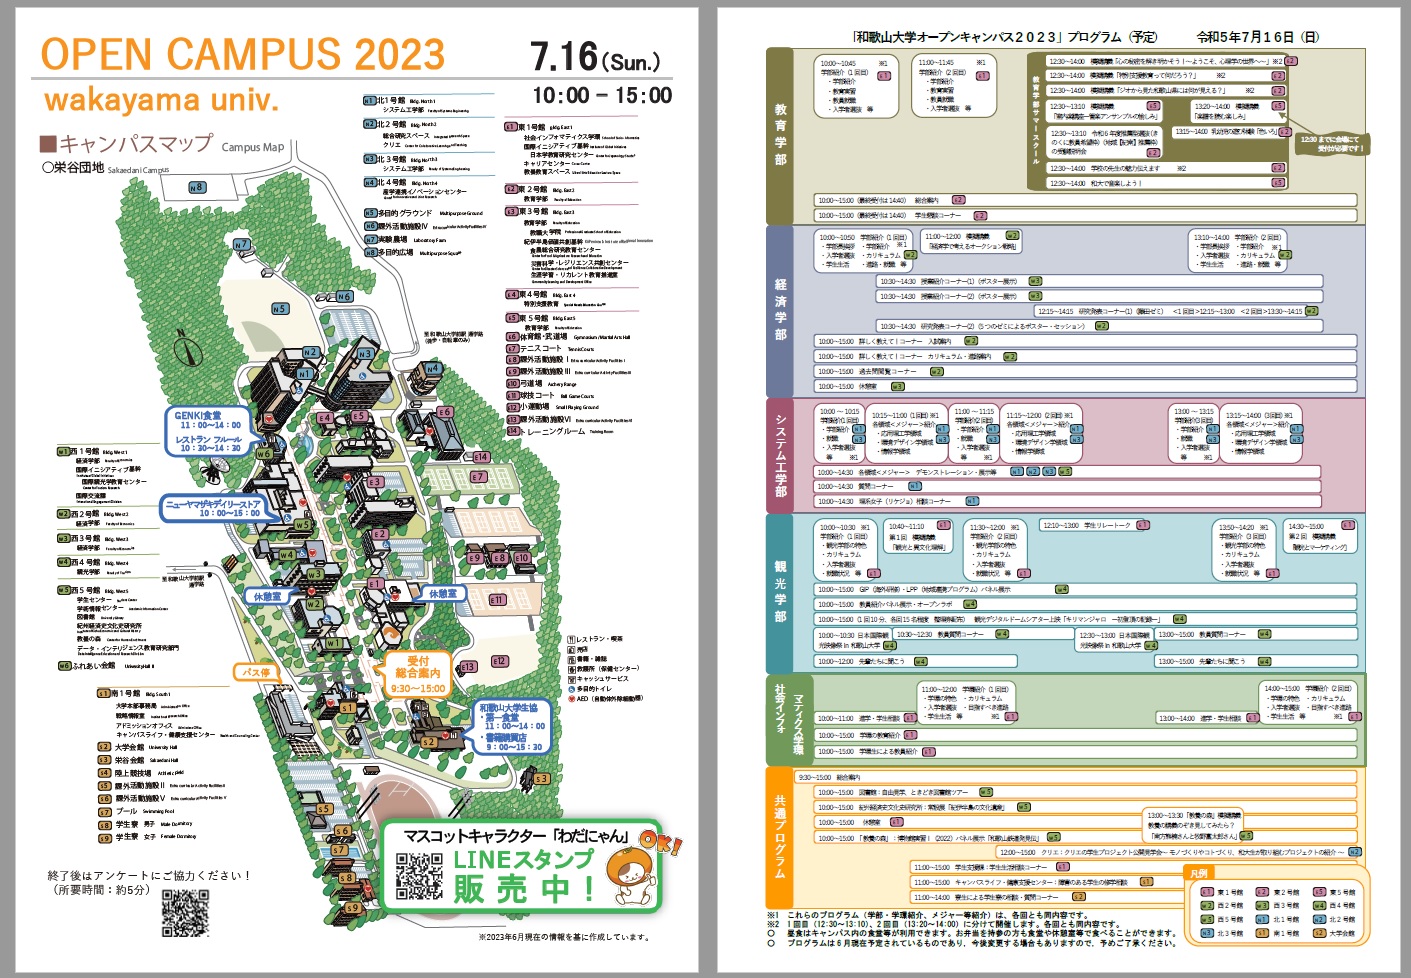 オープンキャンパス2023キャンパスマップ・プログラム画像.jpg